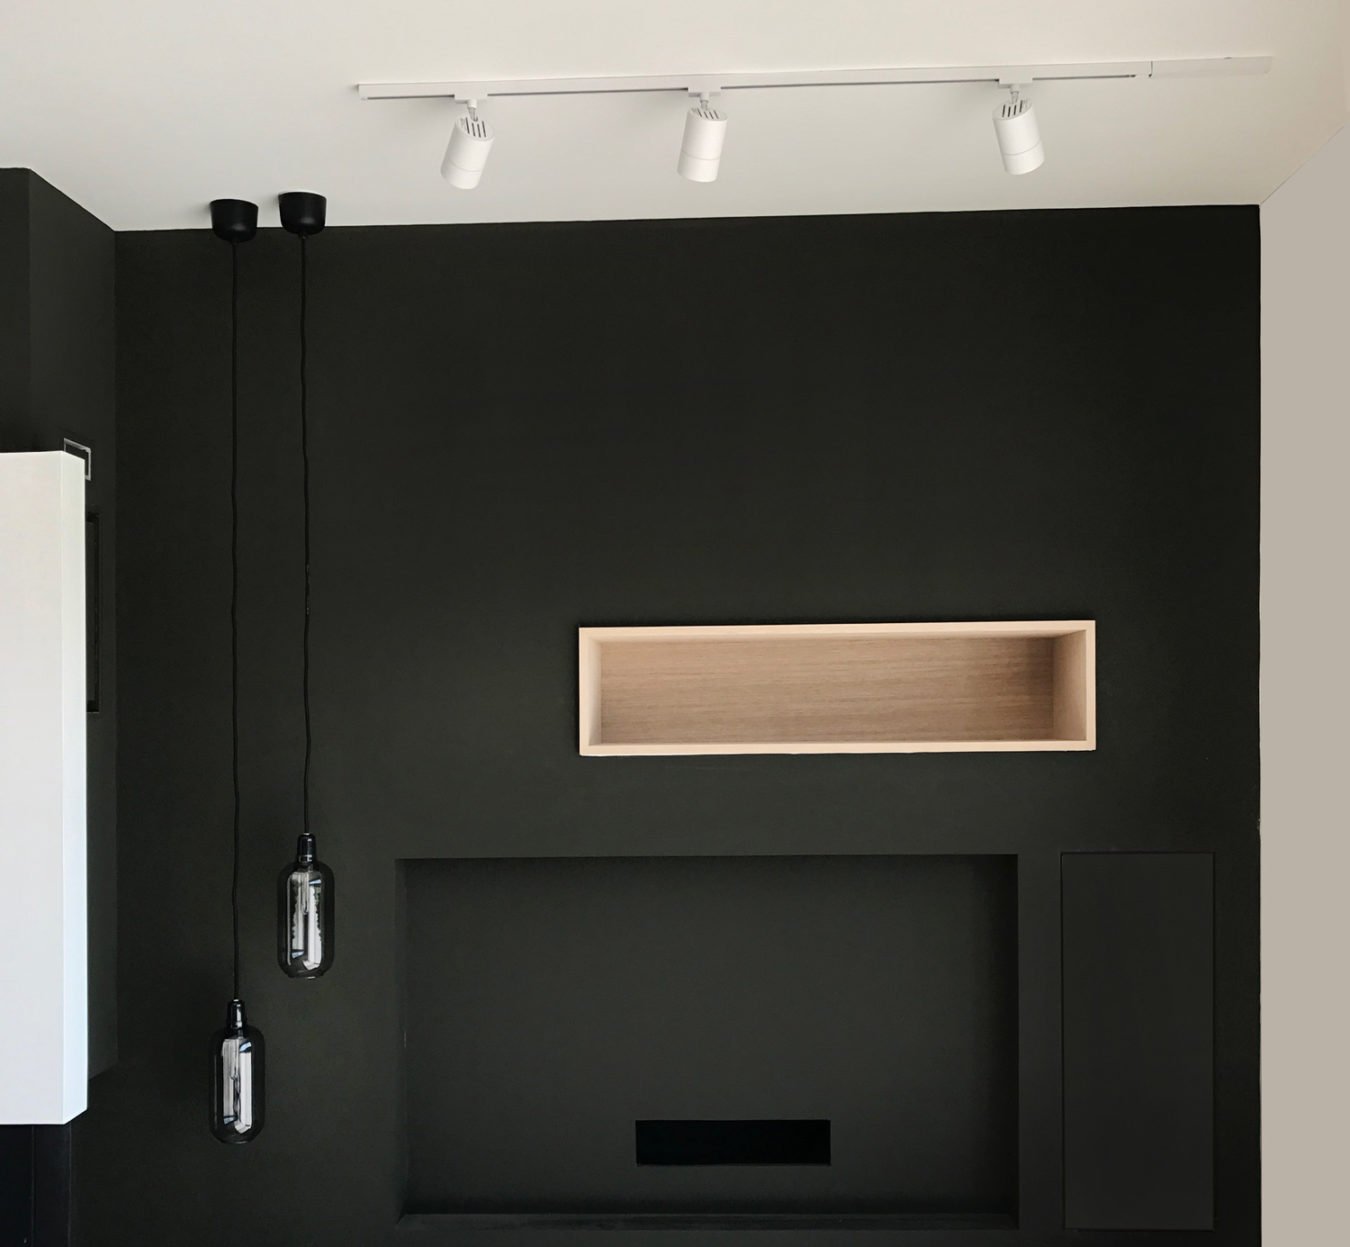 Anouck Charbonnier - Vue 3D - réalisation maison complète - vue séjour avec cheminée - Salvagny